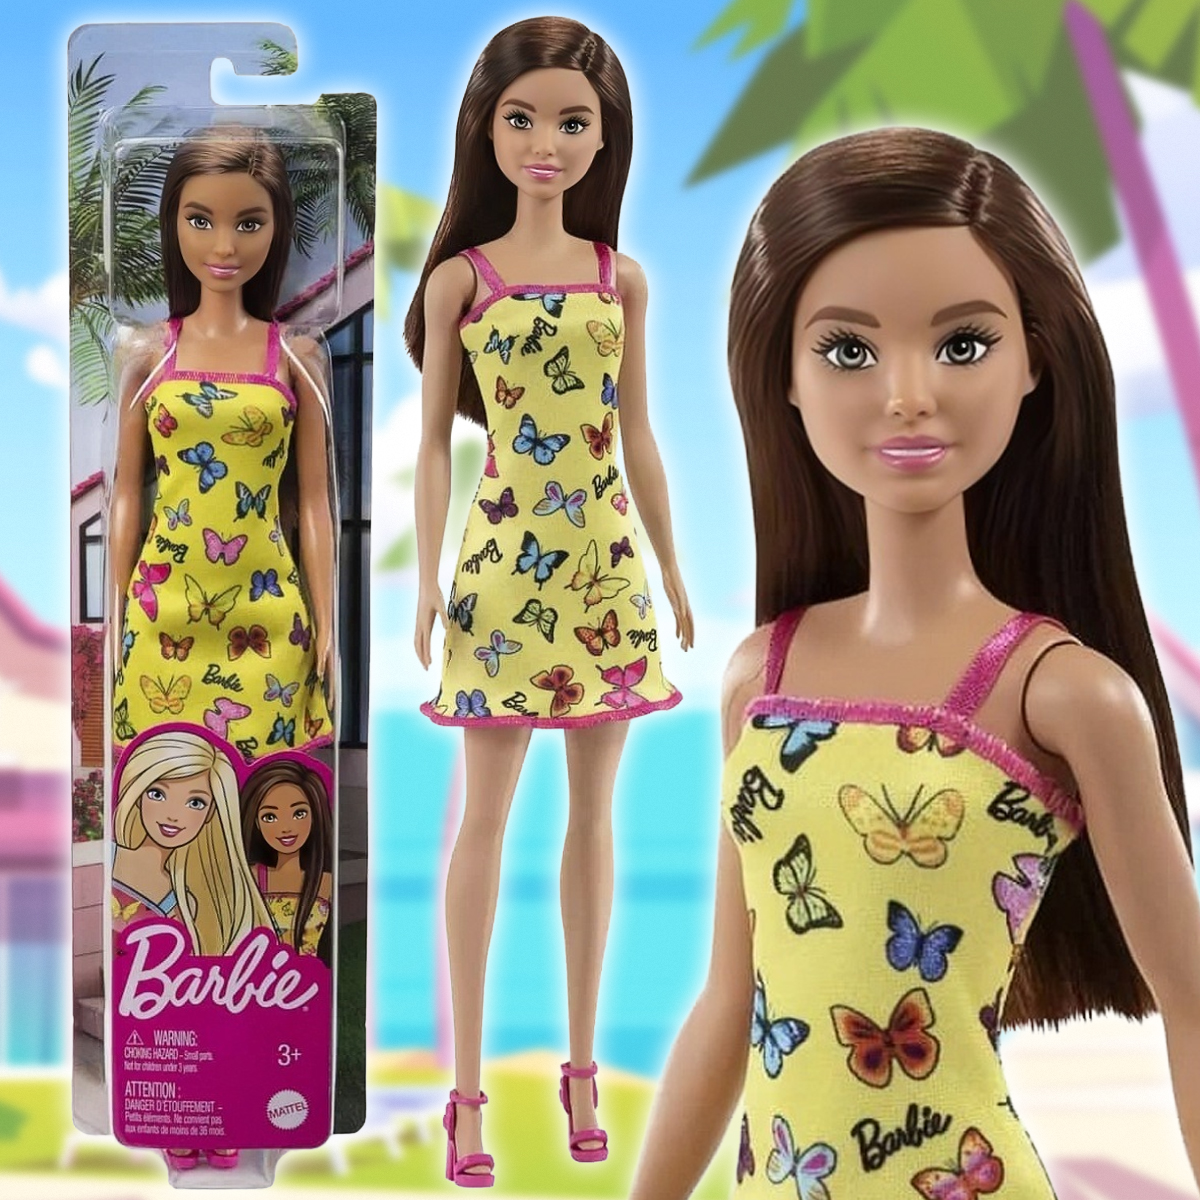 Кукла Barbie серия Супер стиль Barbie Fashionistas в жёлтом платье с бабочками